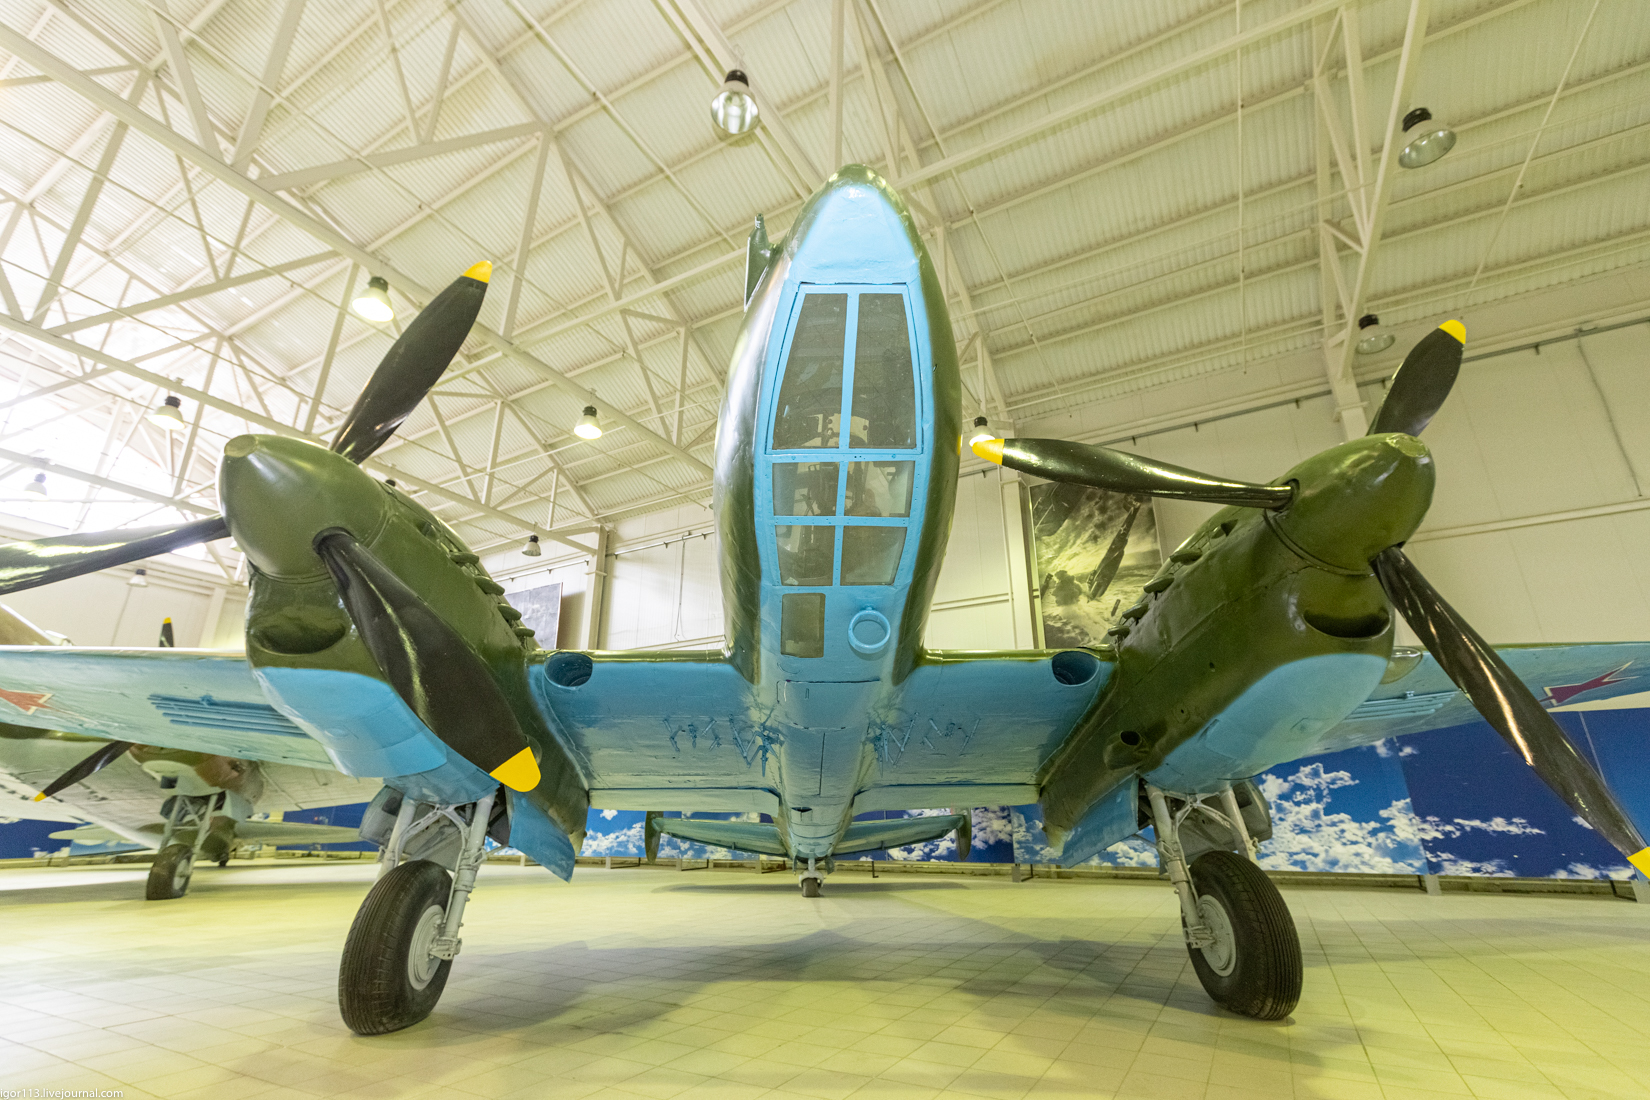 Музей ВВС Монино 030421 зал 2: пикирующий бомбардировщик Пе-2. 